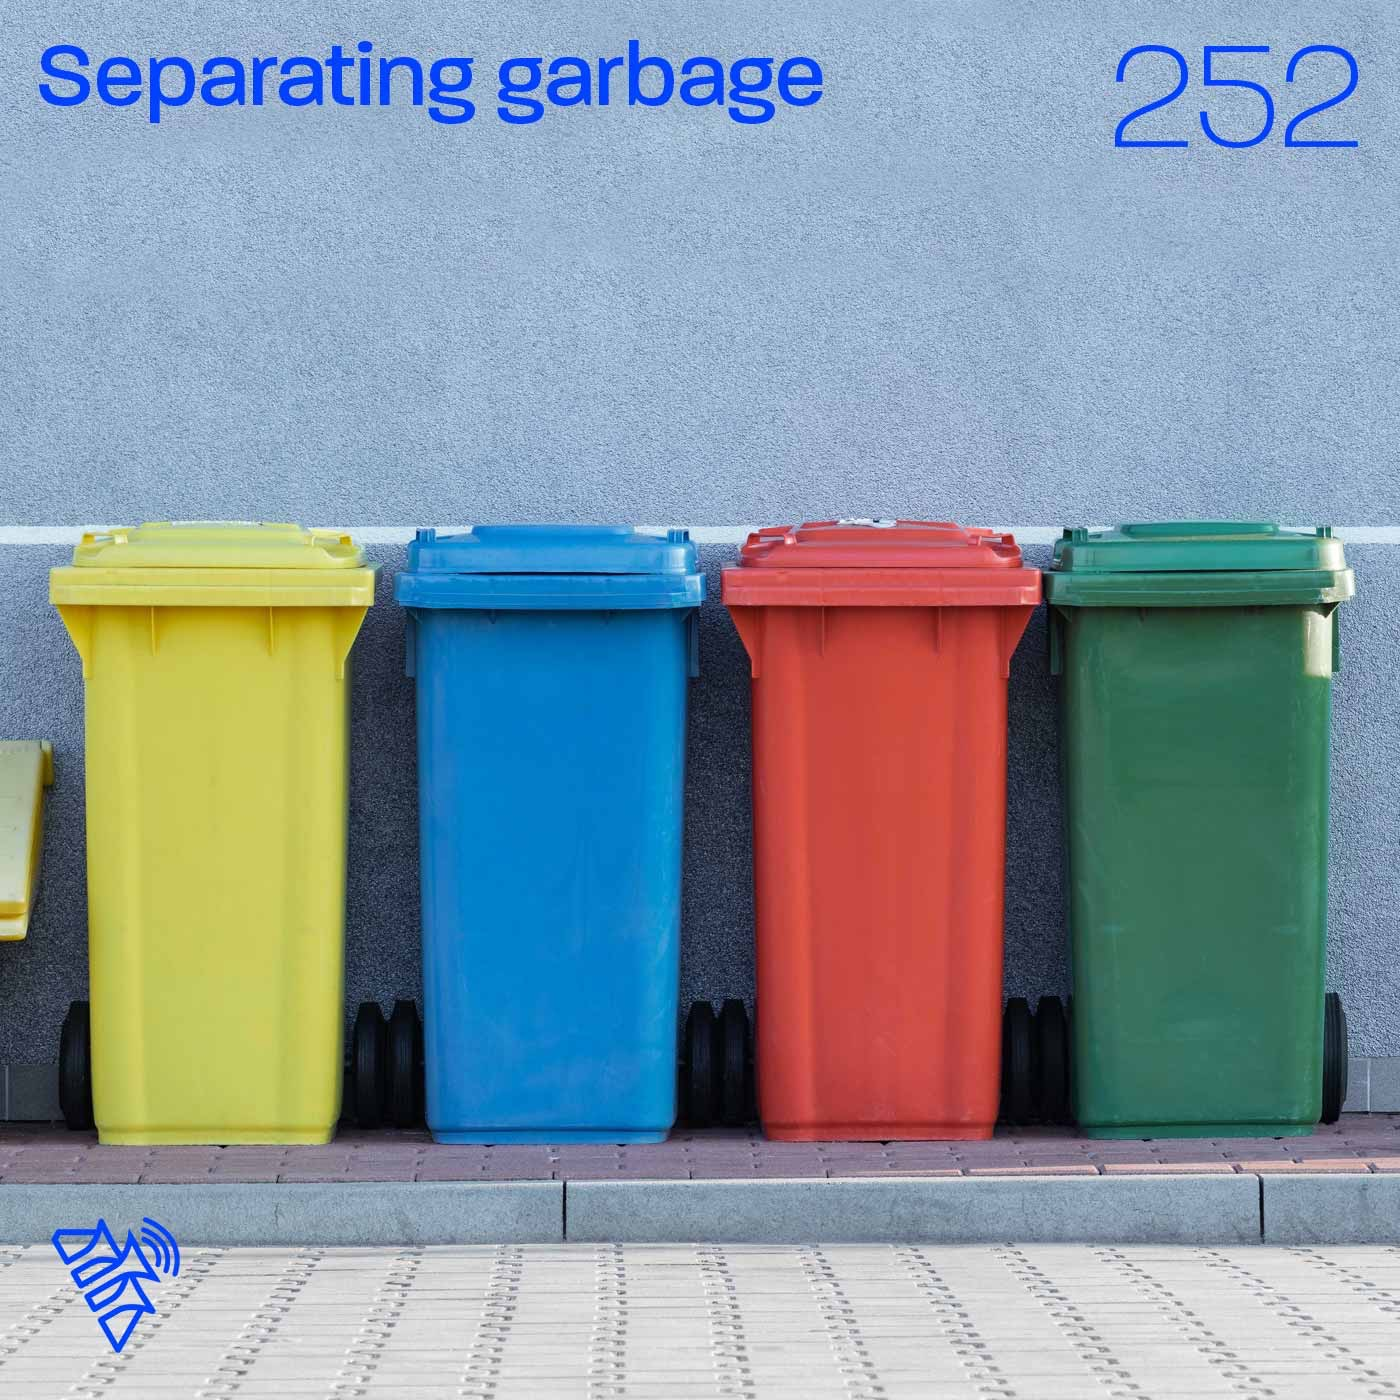 Separating garbage - Pr Paul van Wijnen